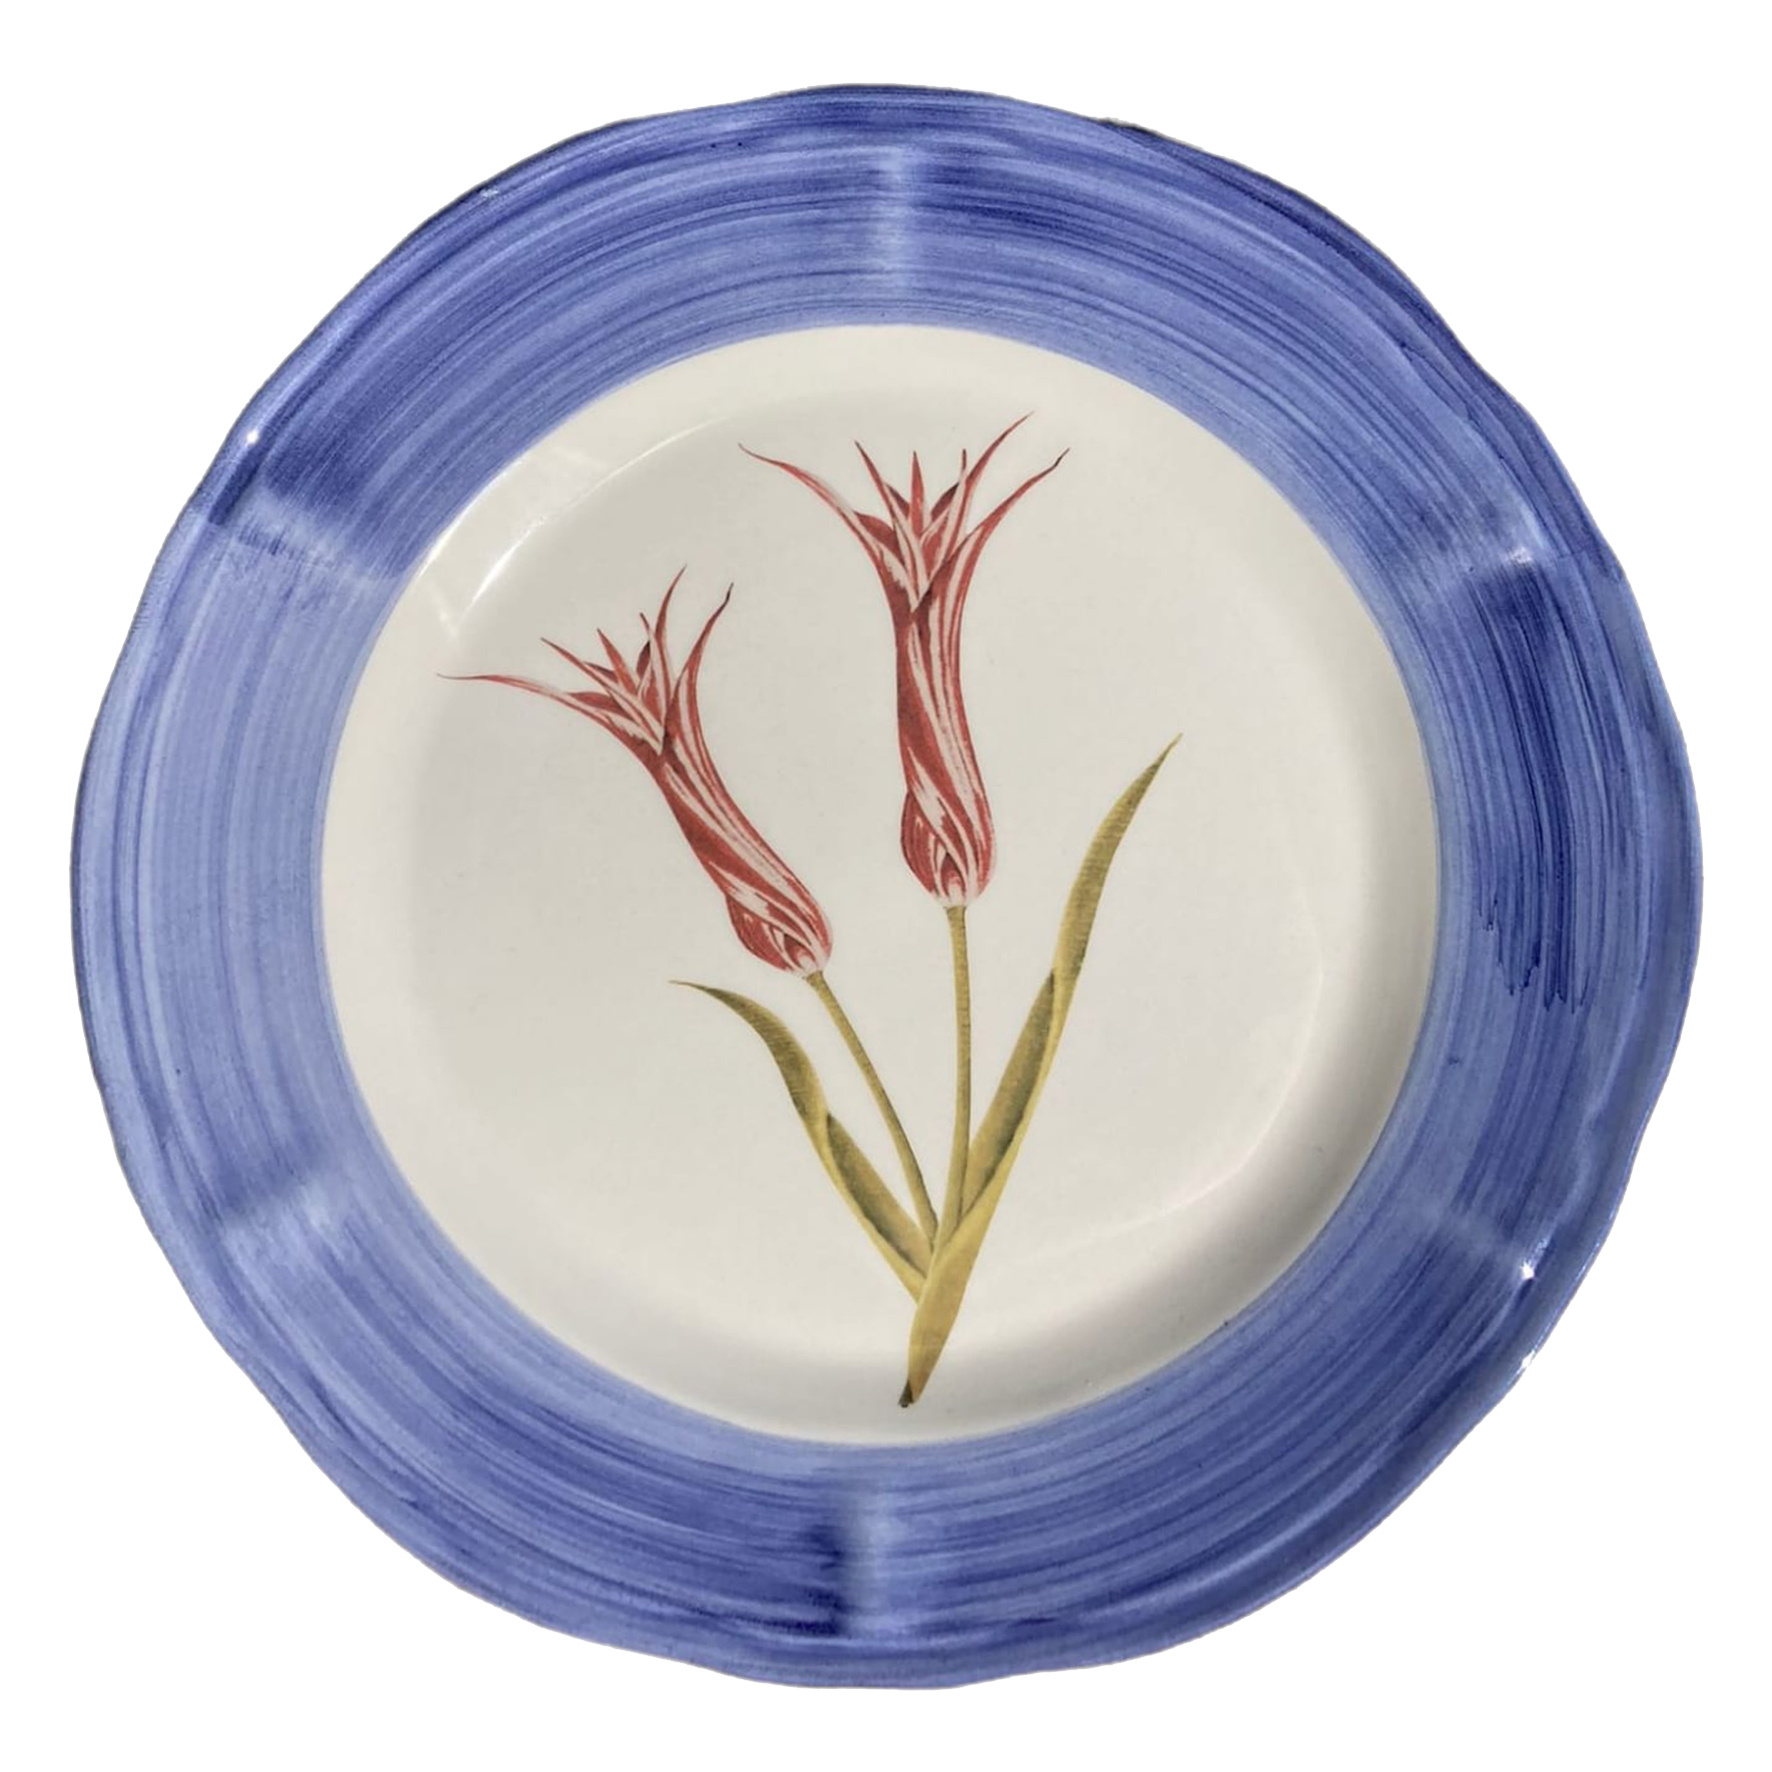 Blue Floral Serving Platter, Vintage Botanical Dishes, Decorative